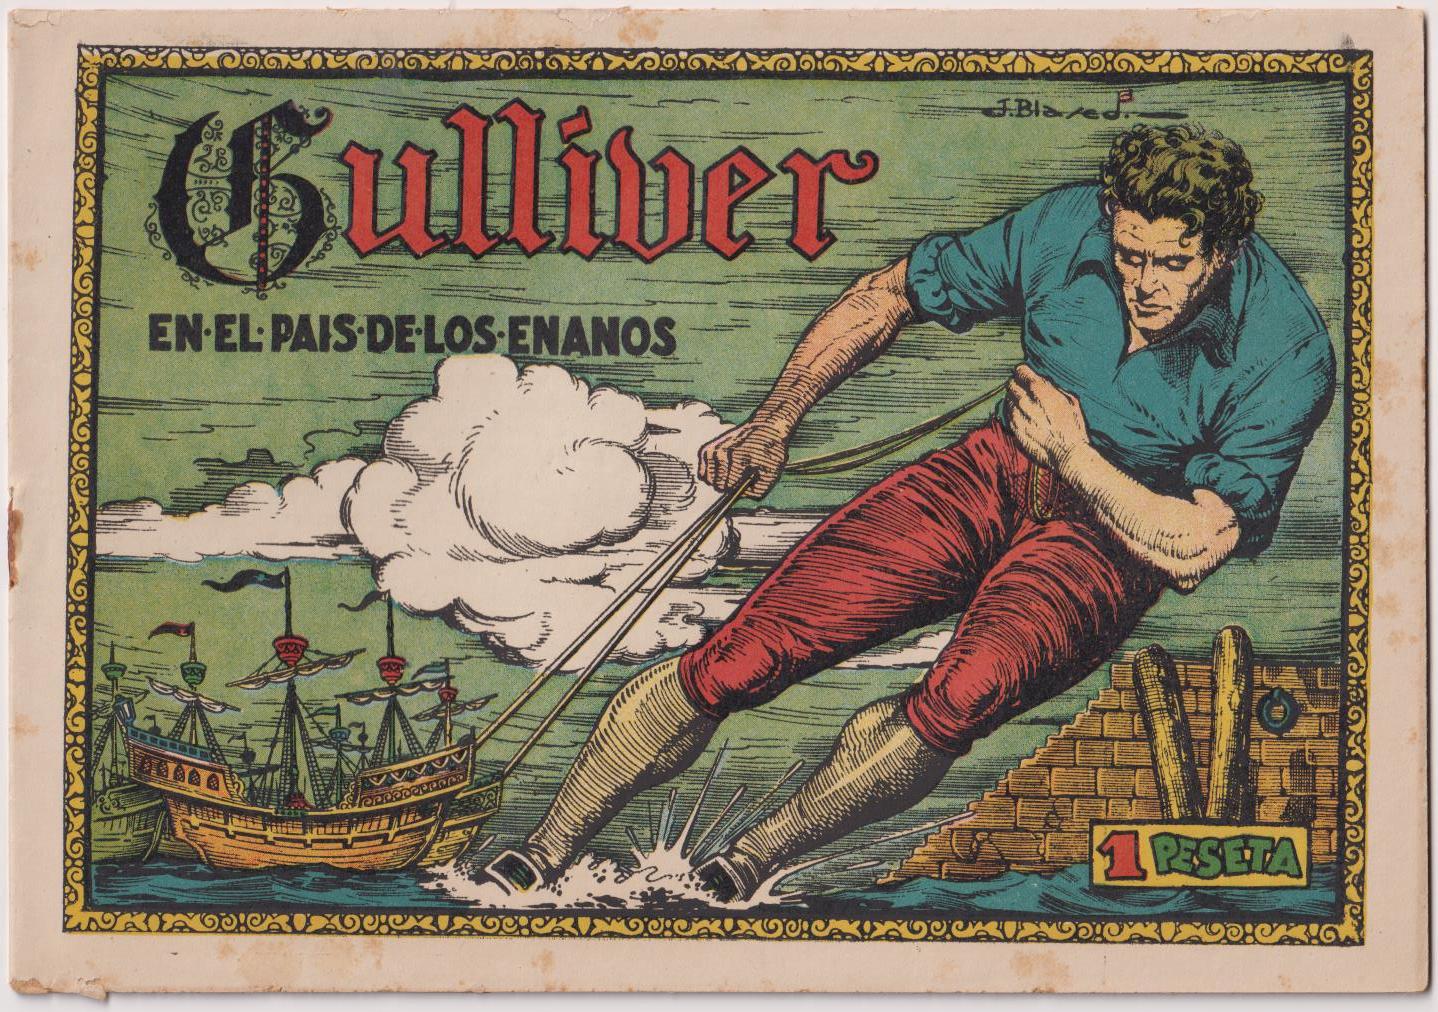 Gulliver en el País de los enanos. Cuadernos Selectos Cisne nº 8. Cliper 1942. Portada J. Blasco